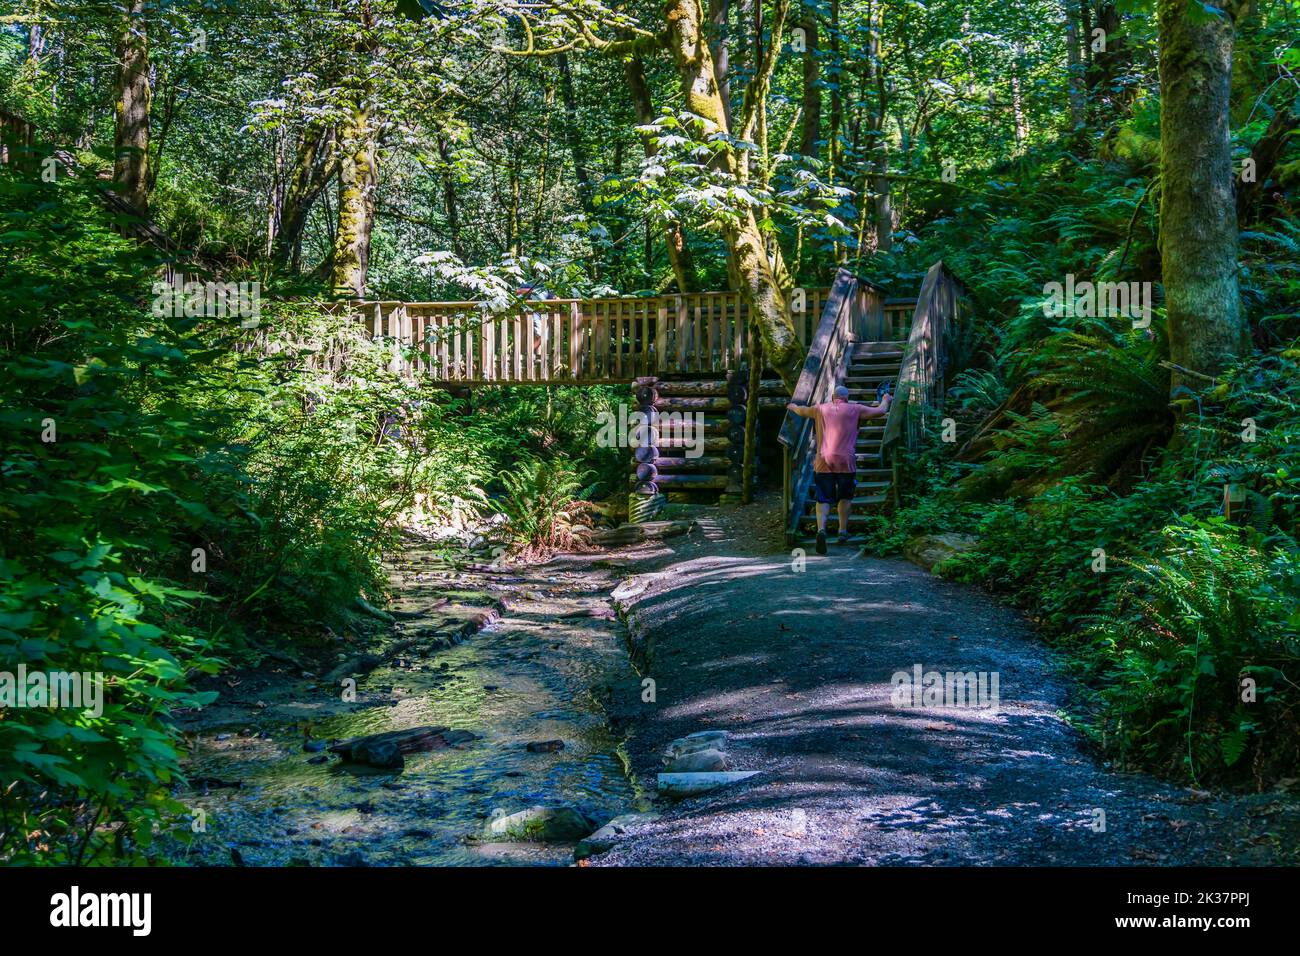 A log walking bridge at Dash Point State park in Washington State. Stock Photo